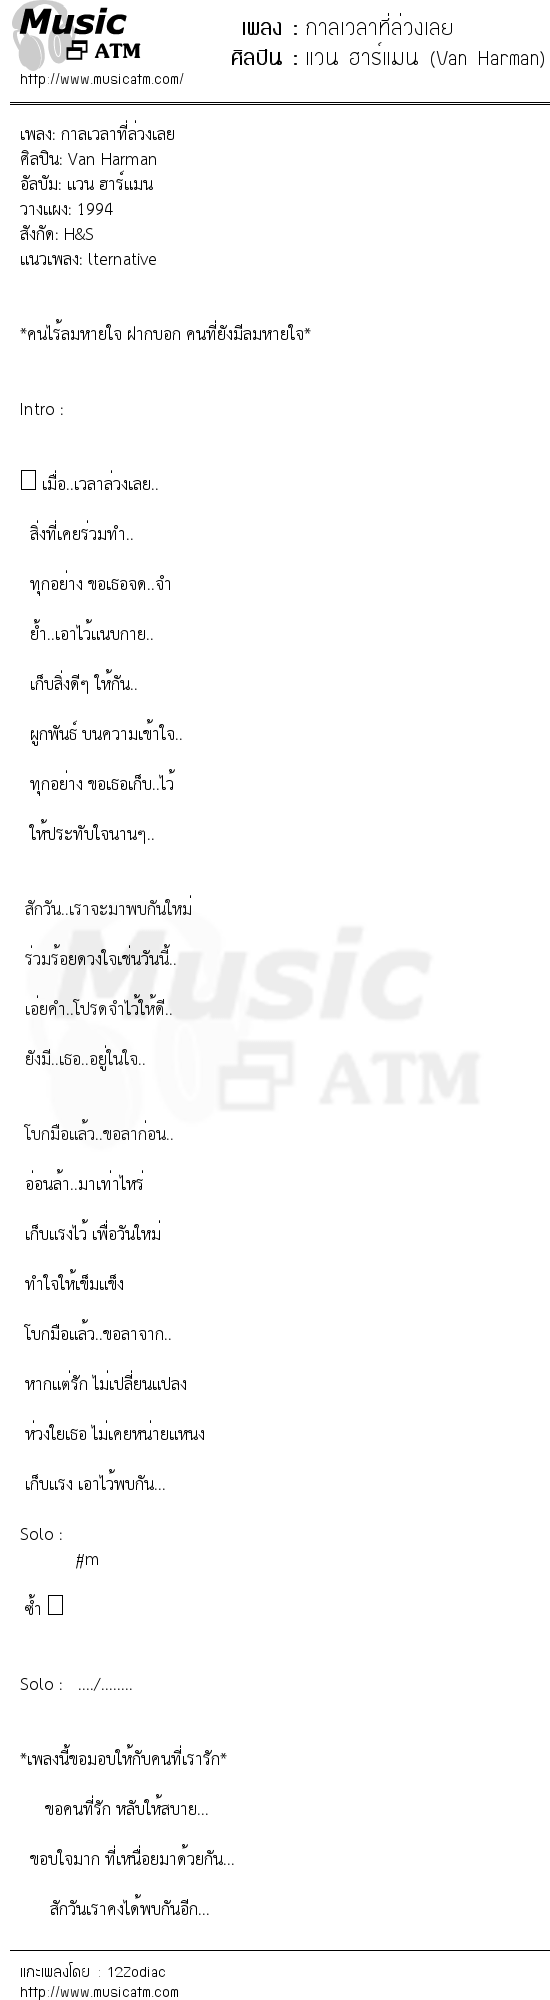 เนื้อเพลง กาลเวลาที่ล่วงเลย - แวน ฮาร์แมน (Van Harman) | เพลงไทย